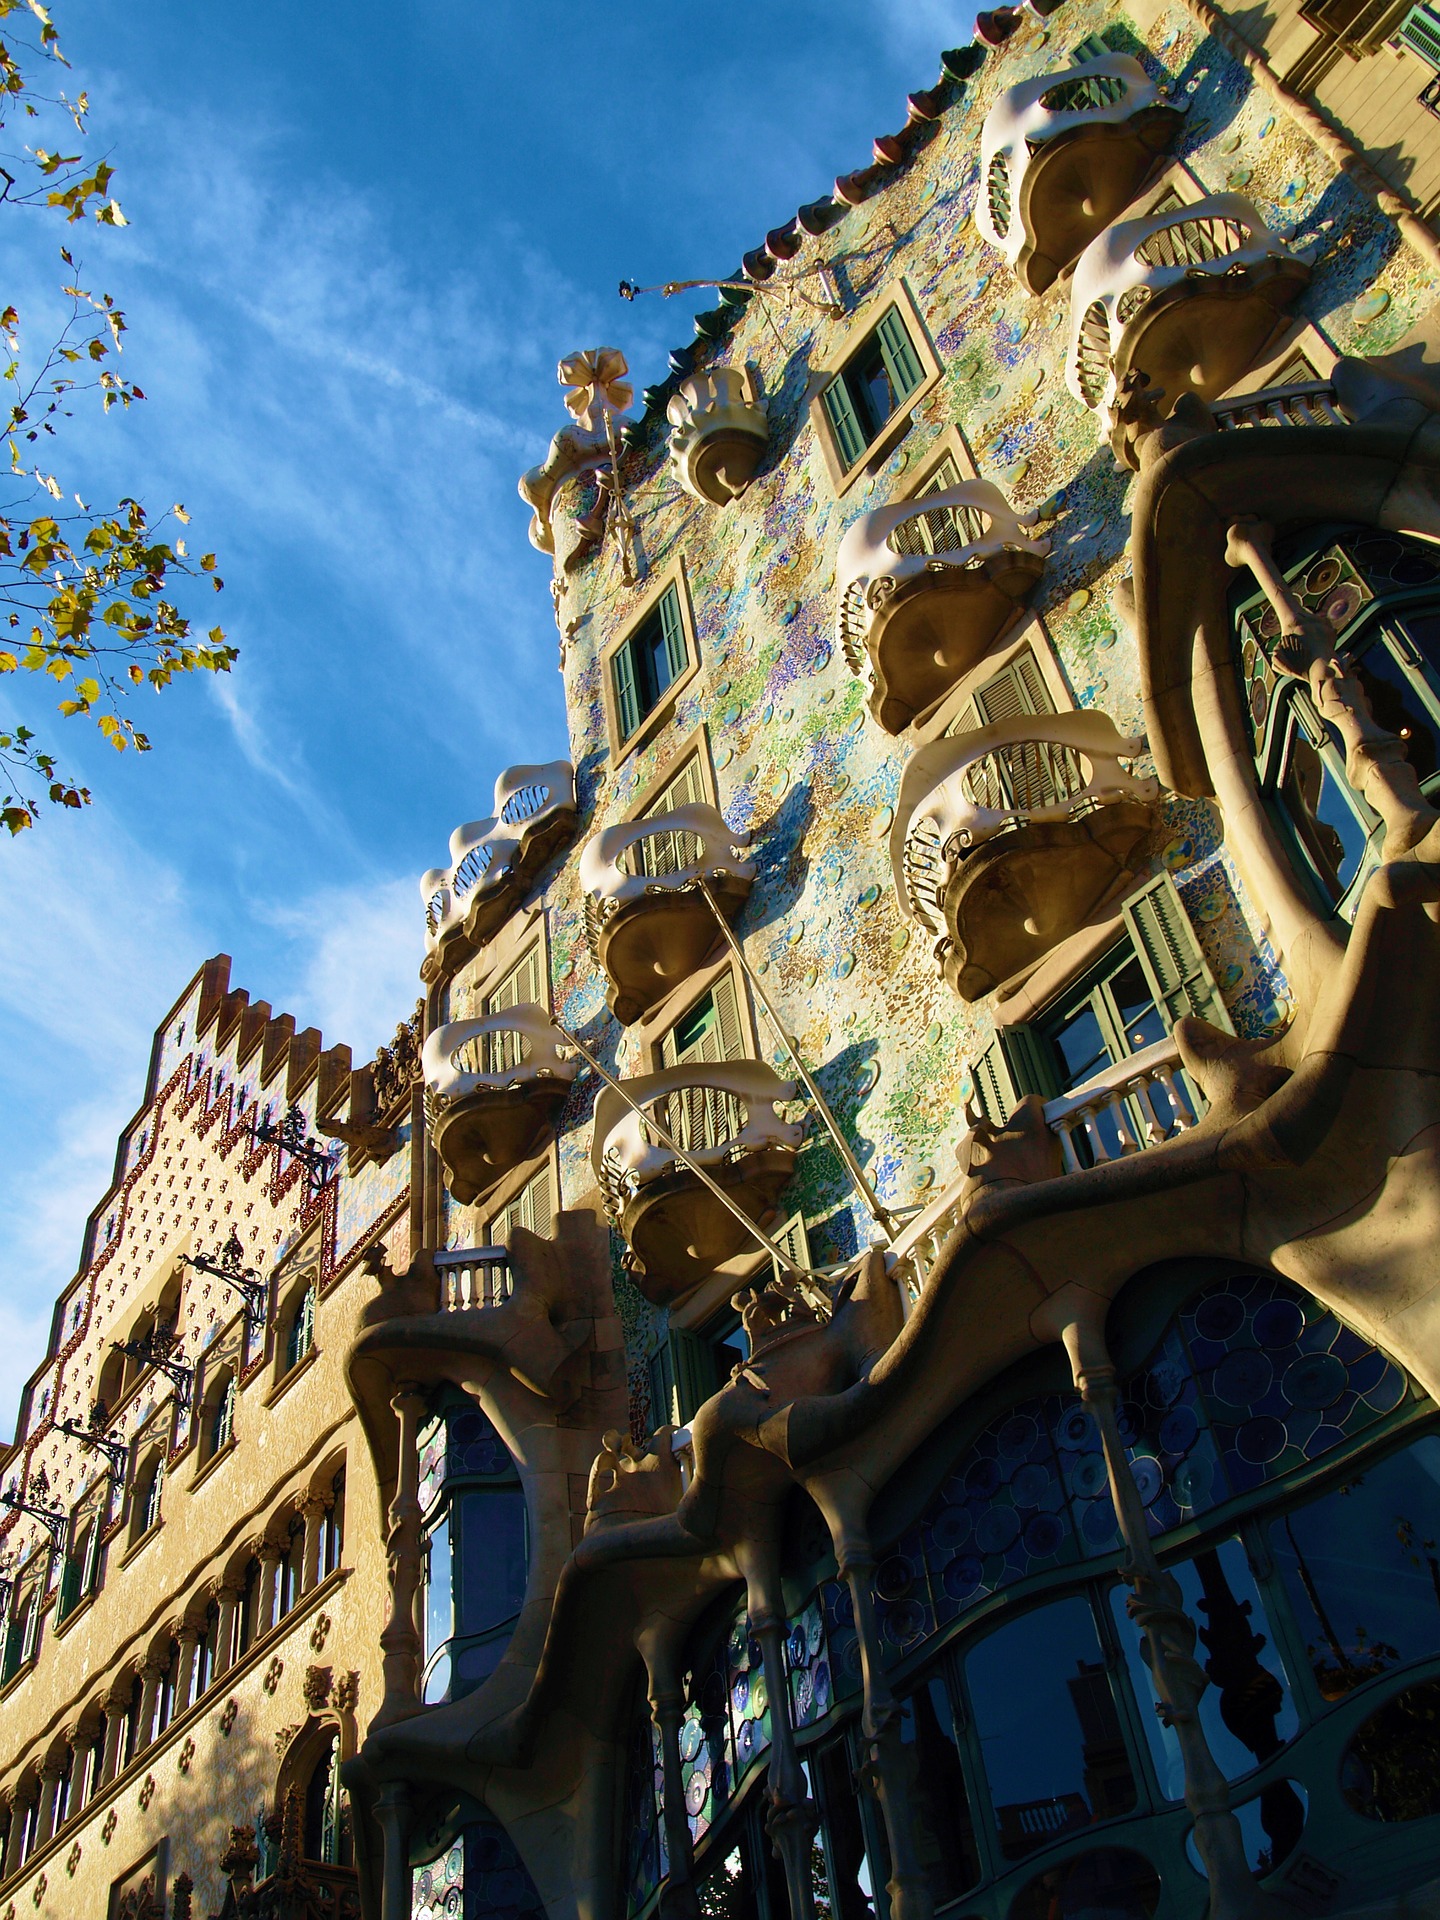 Um dos quarteirões mais bonitos e famosos do Eixample, com a Casa Batlló, projetada pelo arquiteto Antoni Gaudí, em destaque.